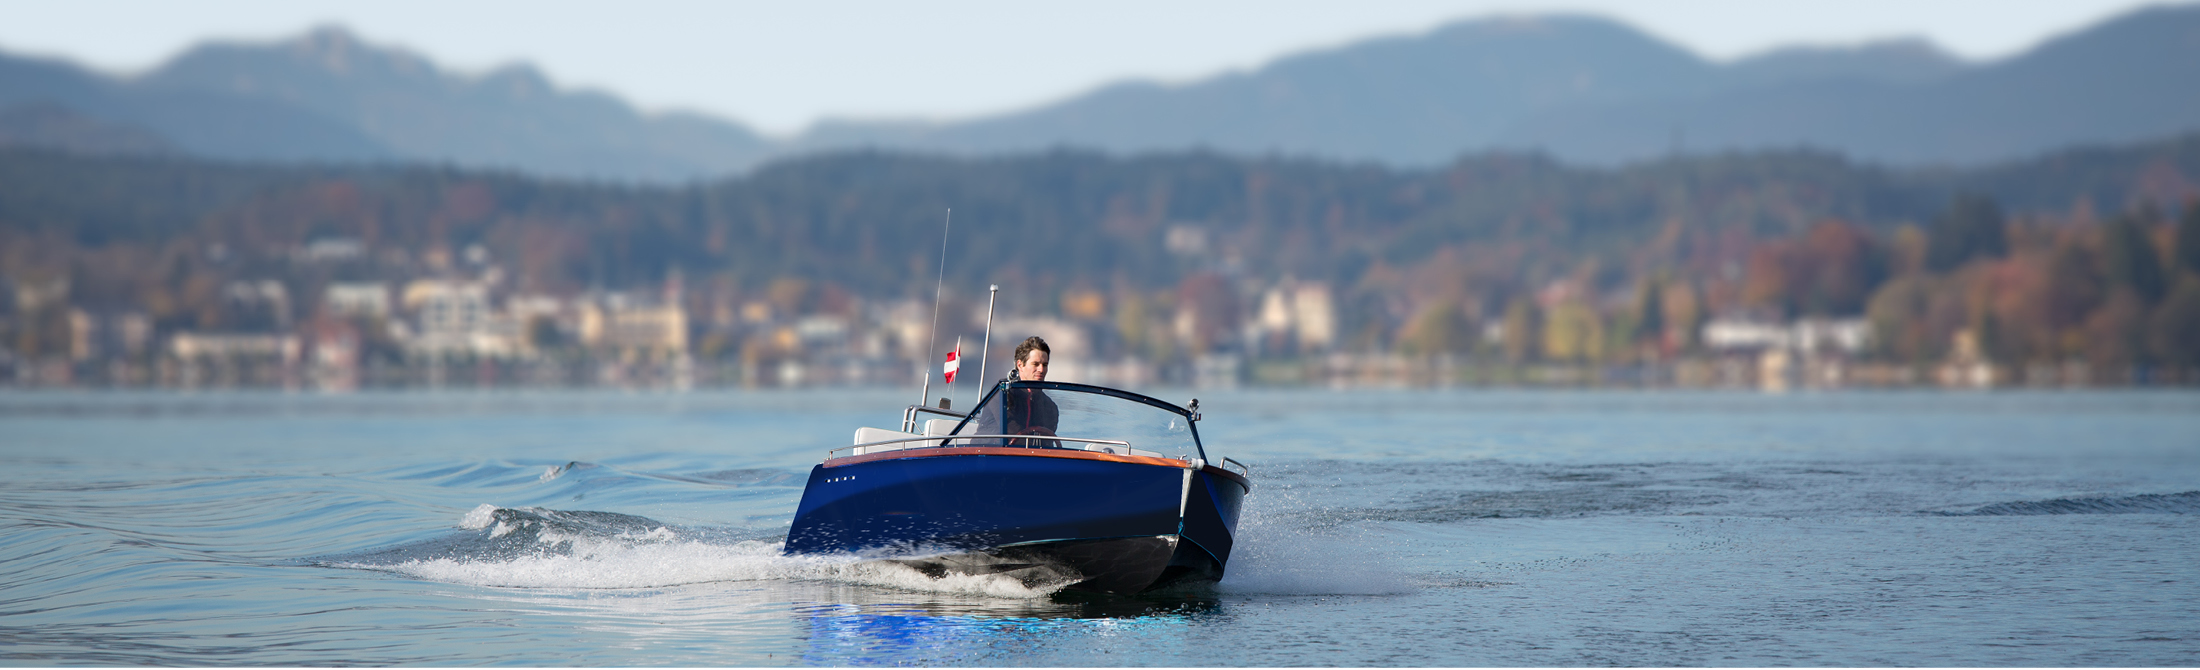 STH M16 Motorboot fährt schnell über den See